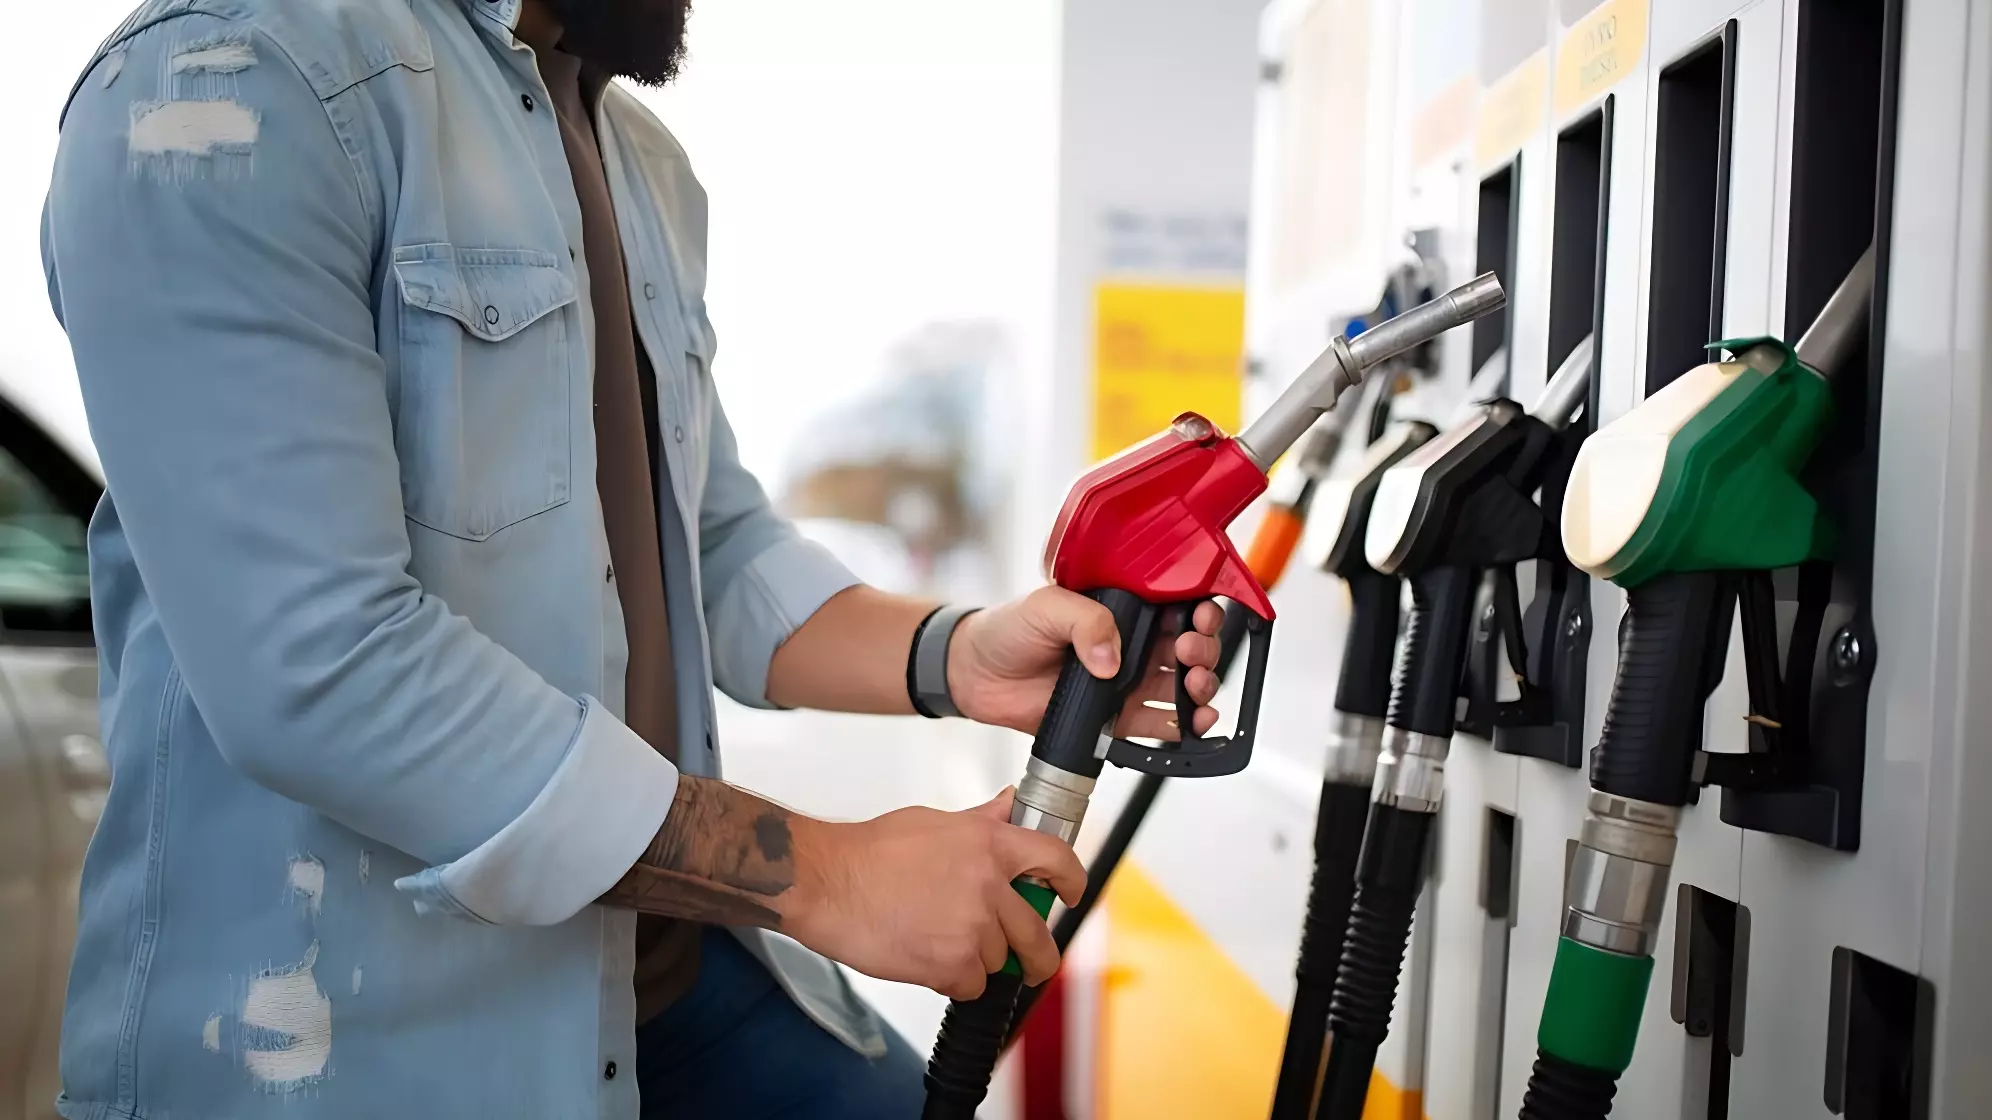 Цены на бензин в Пермском крае перестали расти, но они все еще самые высокие в ПФО